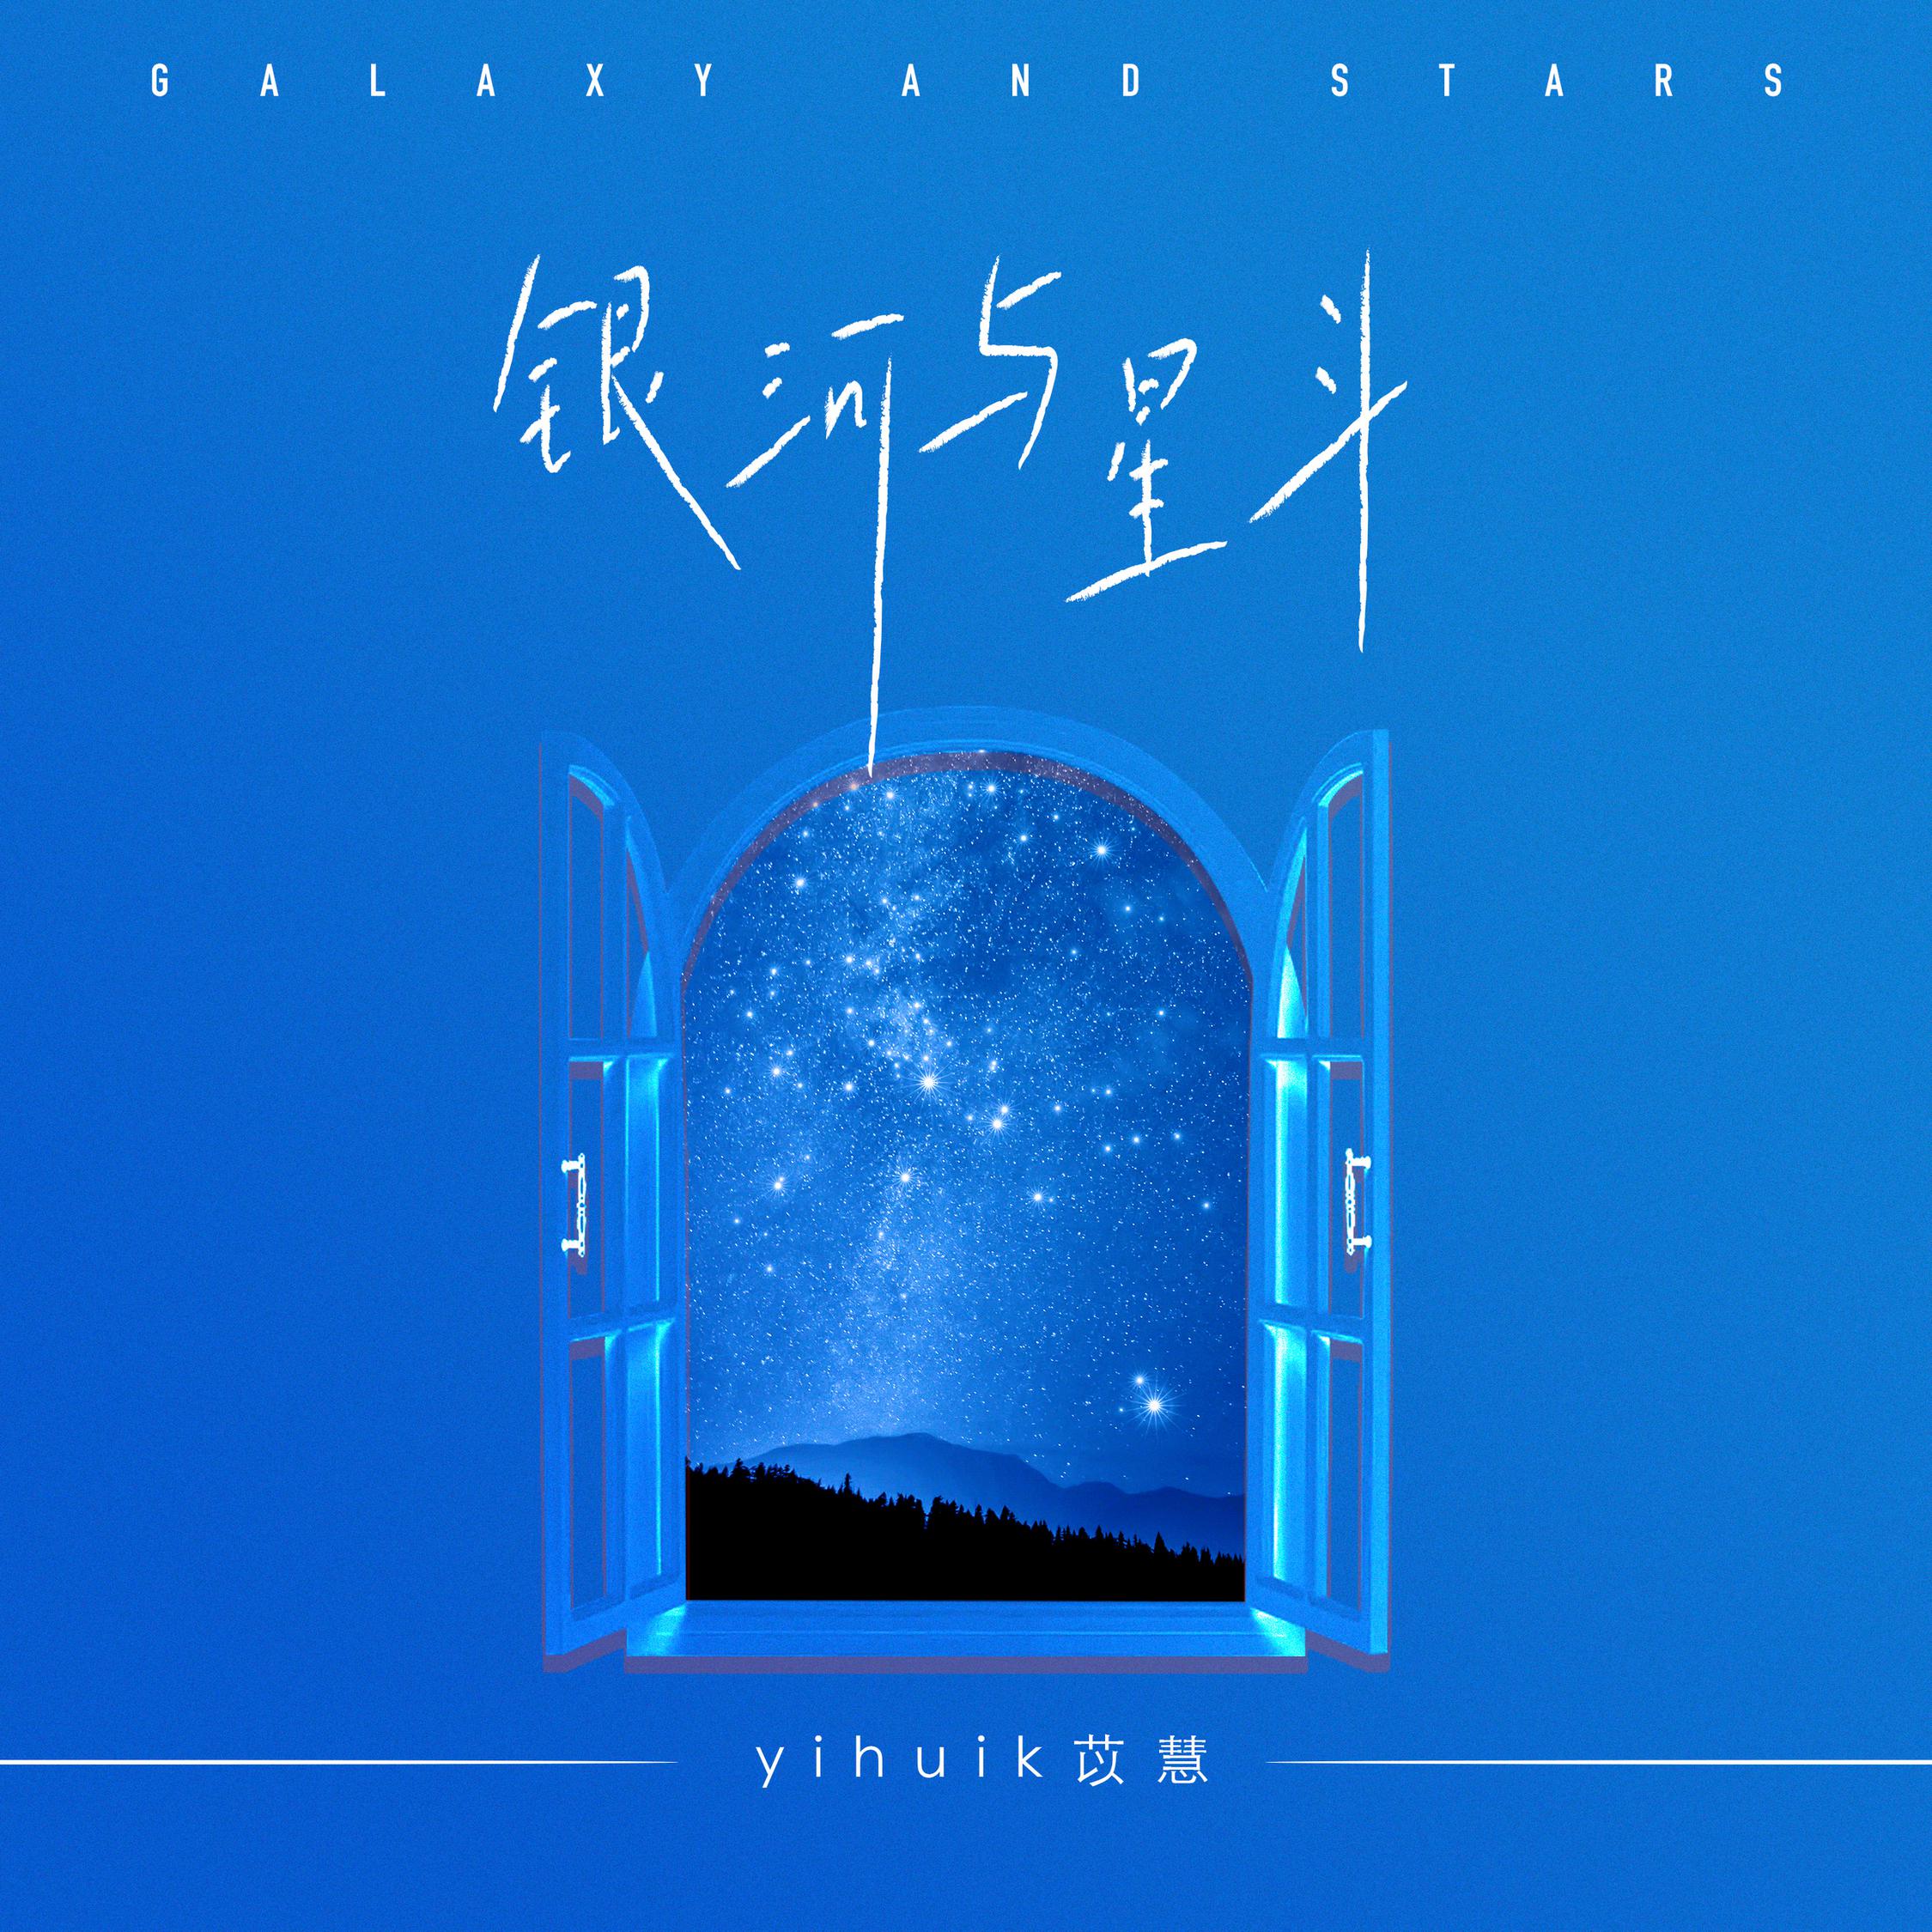 【值得一听】每日歌曲分享:《银河与星斗》-yihuik苡慧-南逸博客